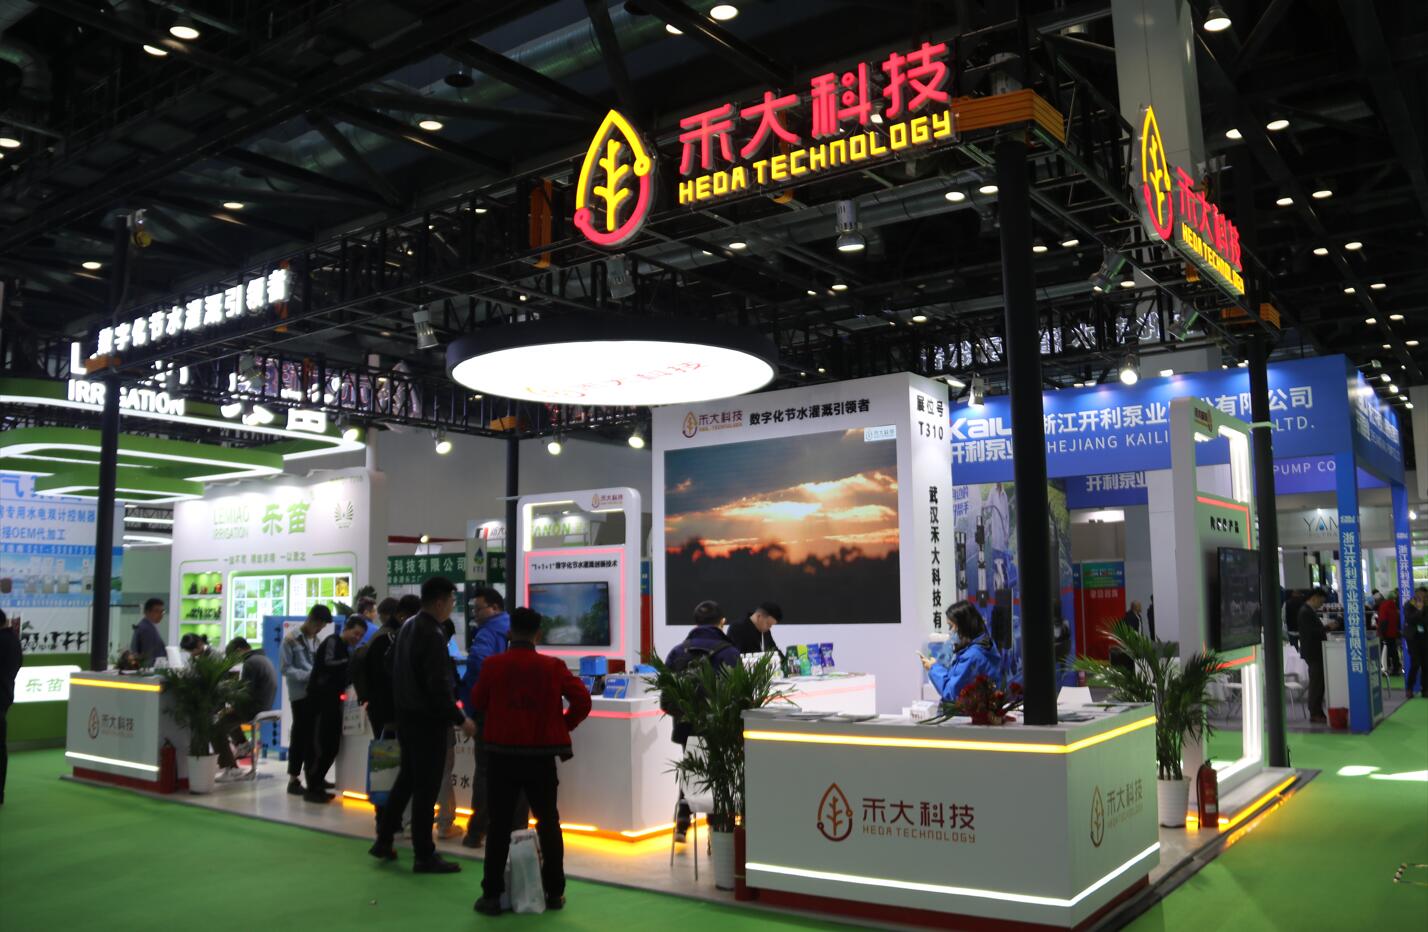 武汉禾大科技有限公司携多款新品亮相第十届北京国际数字农业与灌溉技术博览会